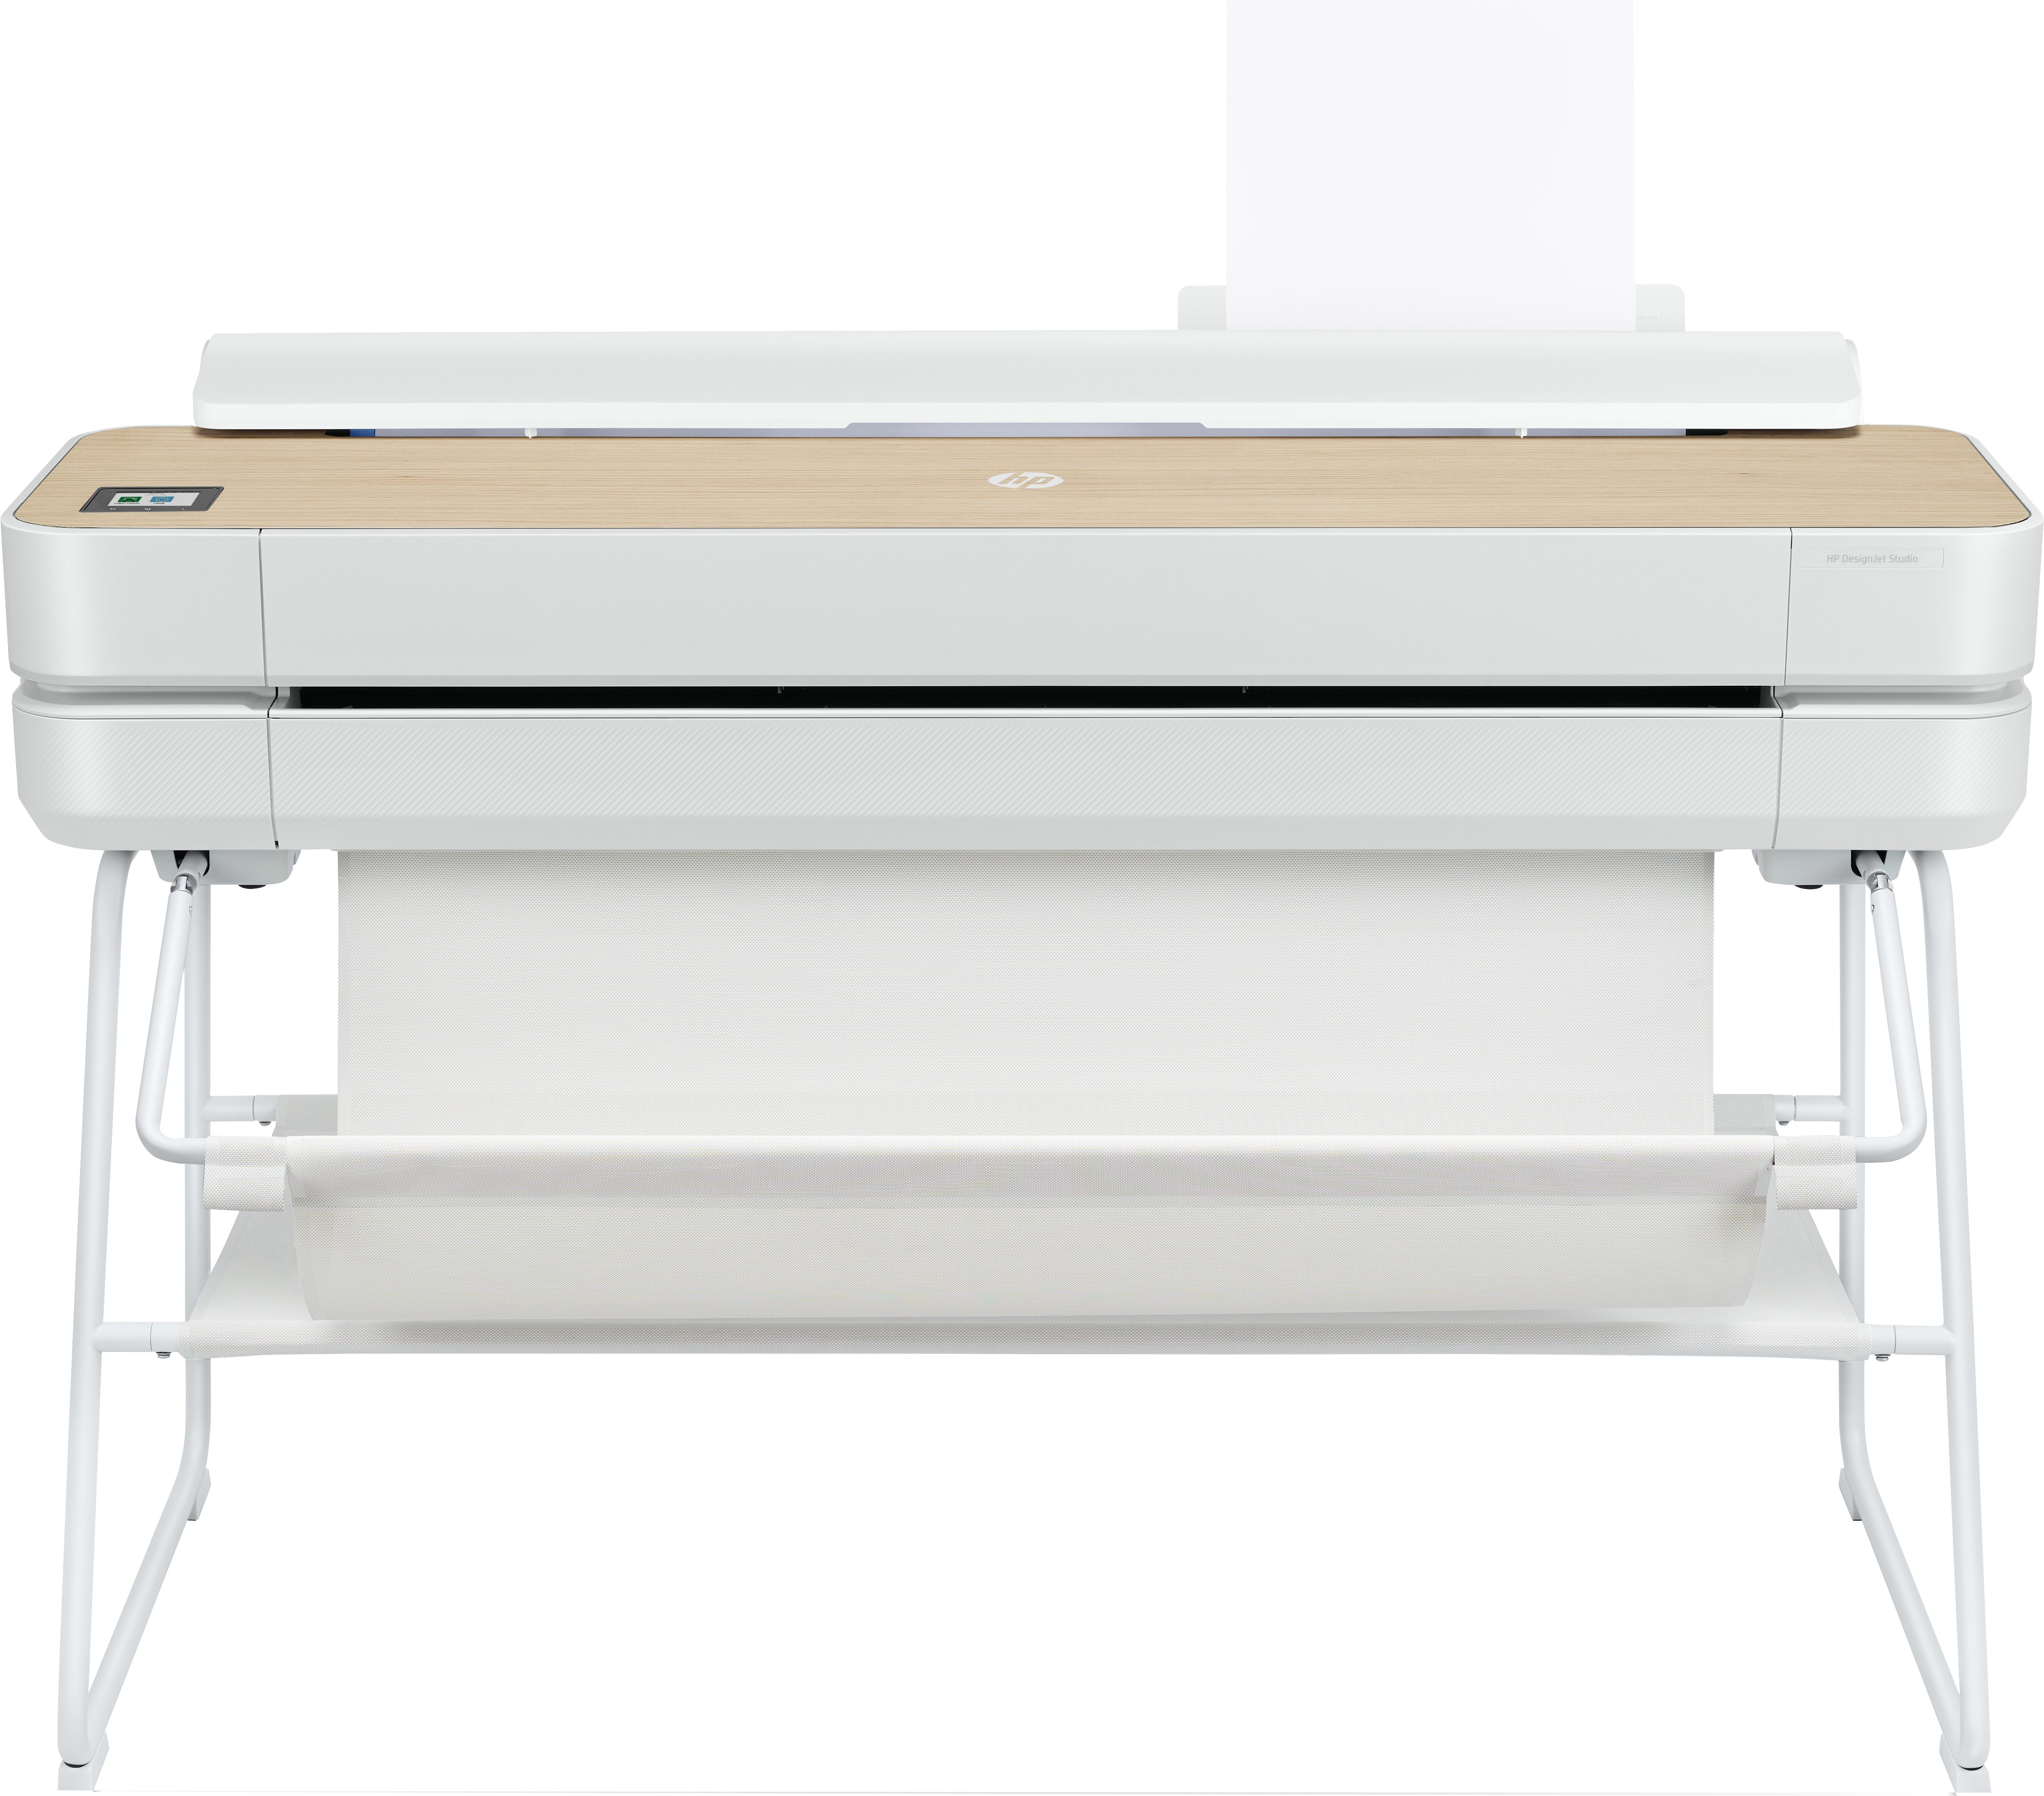 HP Designjet Studio 36-in Printer